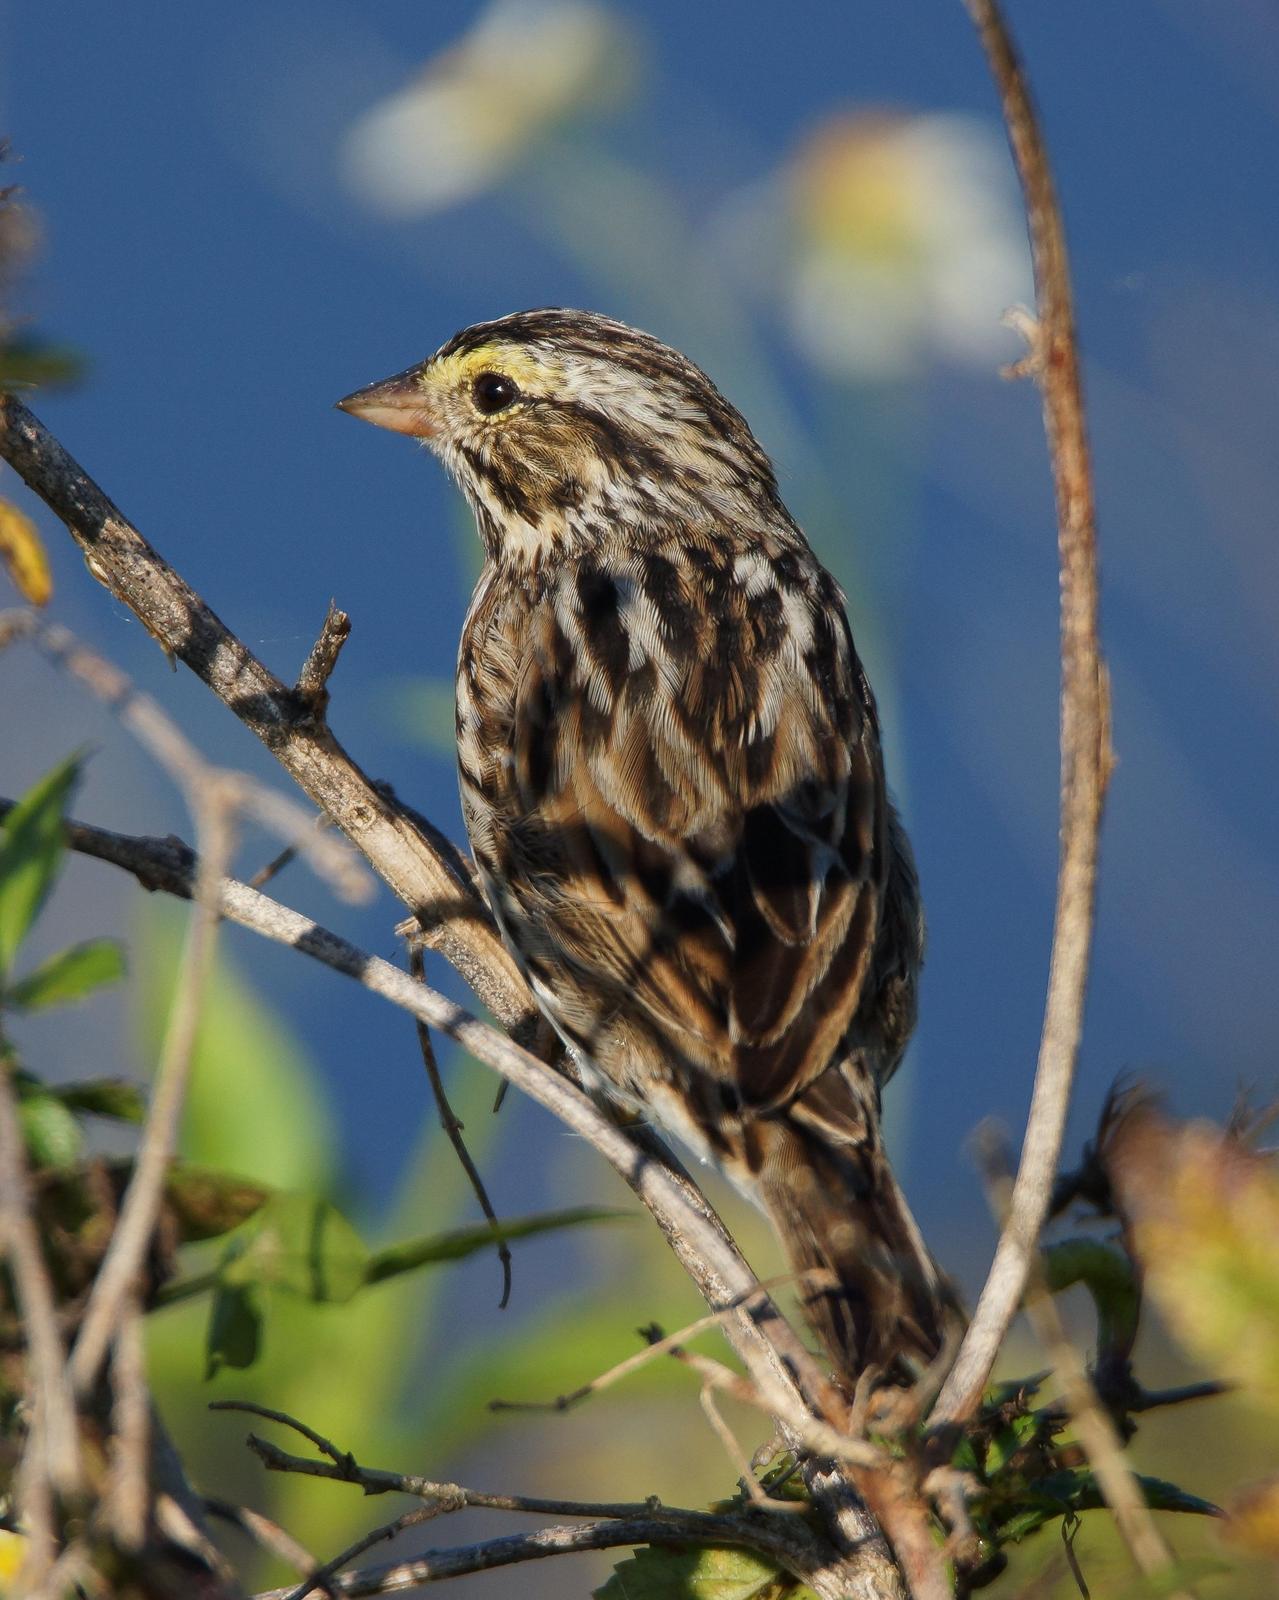 Savannah Sparrow Photo by Steve Percival